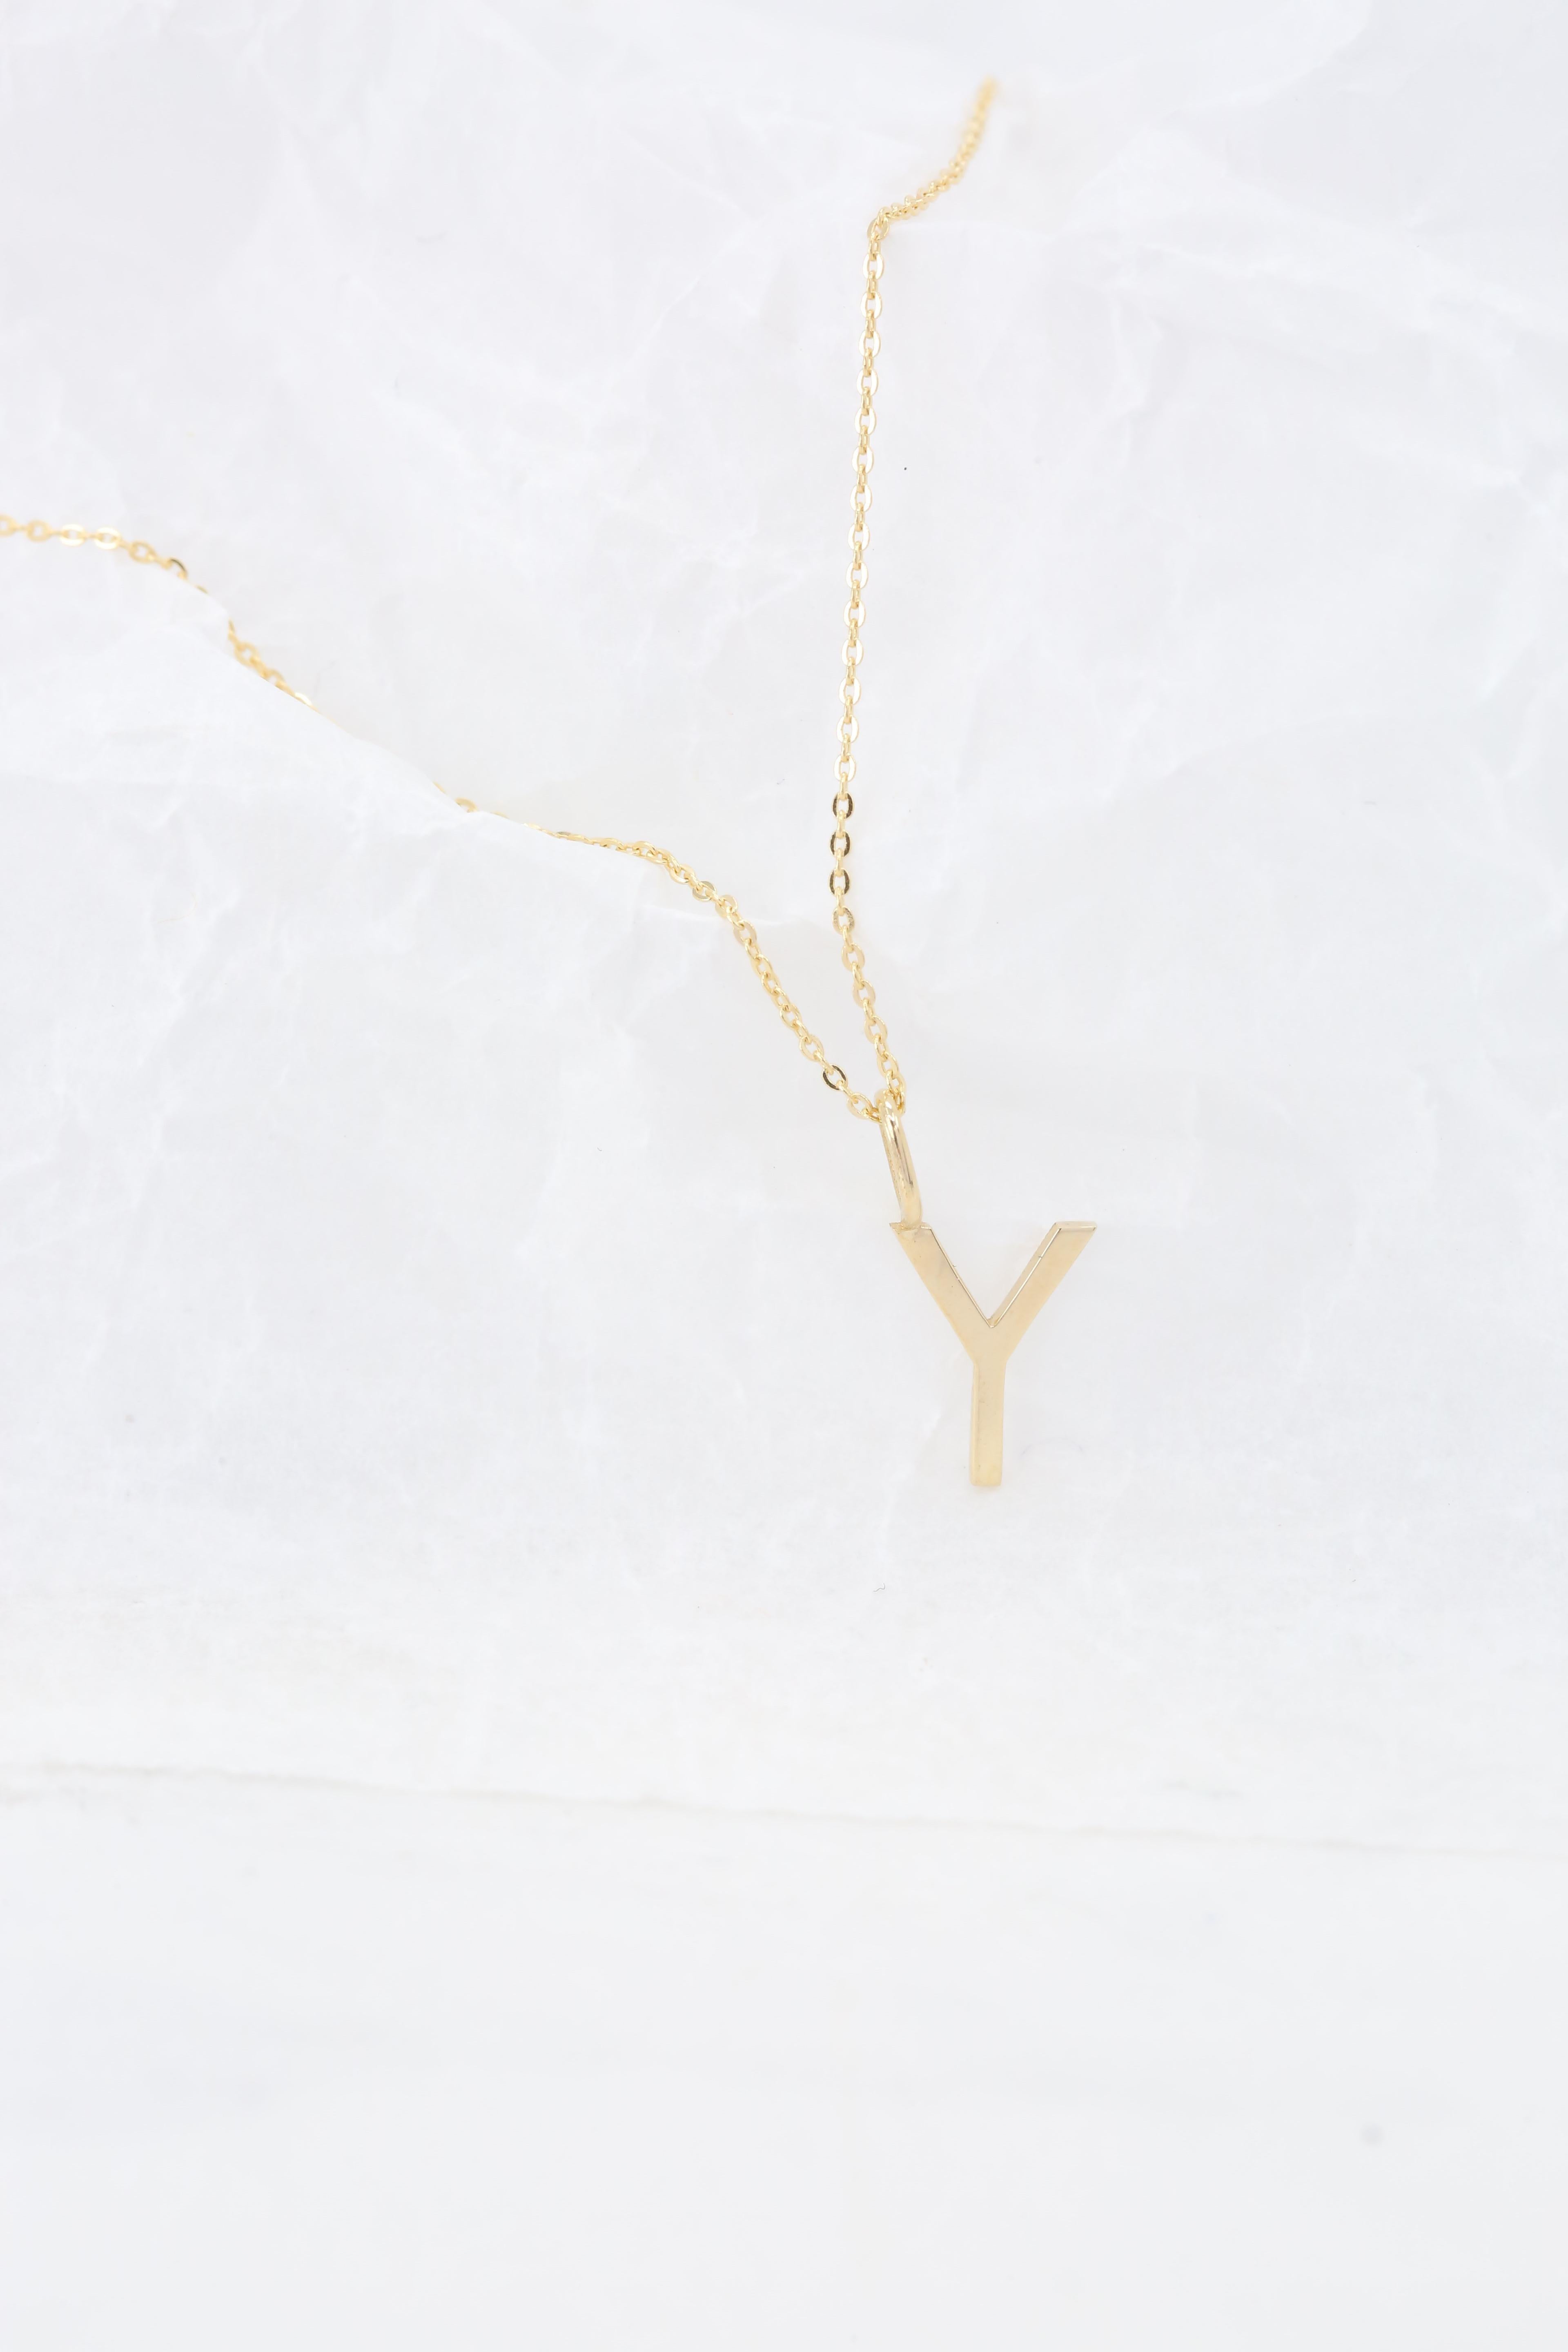 Modern 14k Gold Necklaces, Letter Necklace Models, Letter Y Gold Necklace-Gift Necklace For Sale